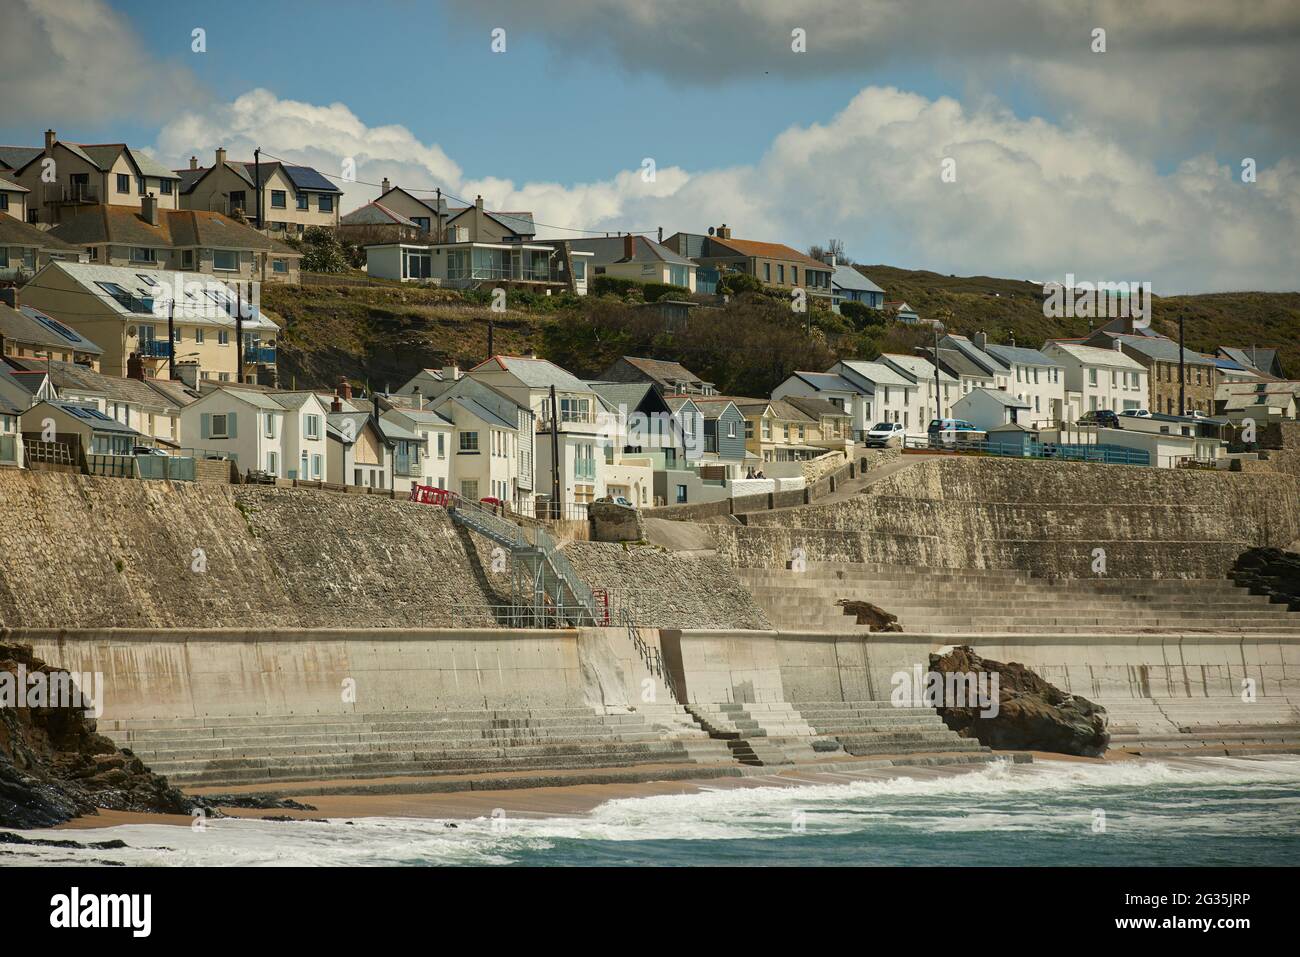 Destination touristique Cornish Porthleven, Cornouailles, Angleterre, a photographié des logements le long de la route côtière Cliff Road et du mur de défense de la mer Banque D'Images